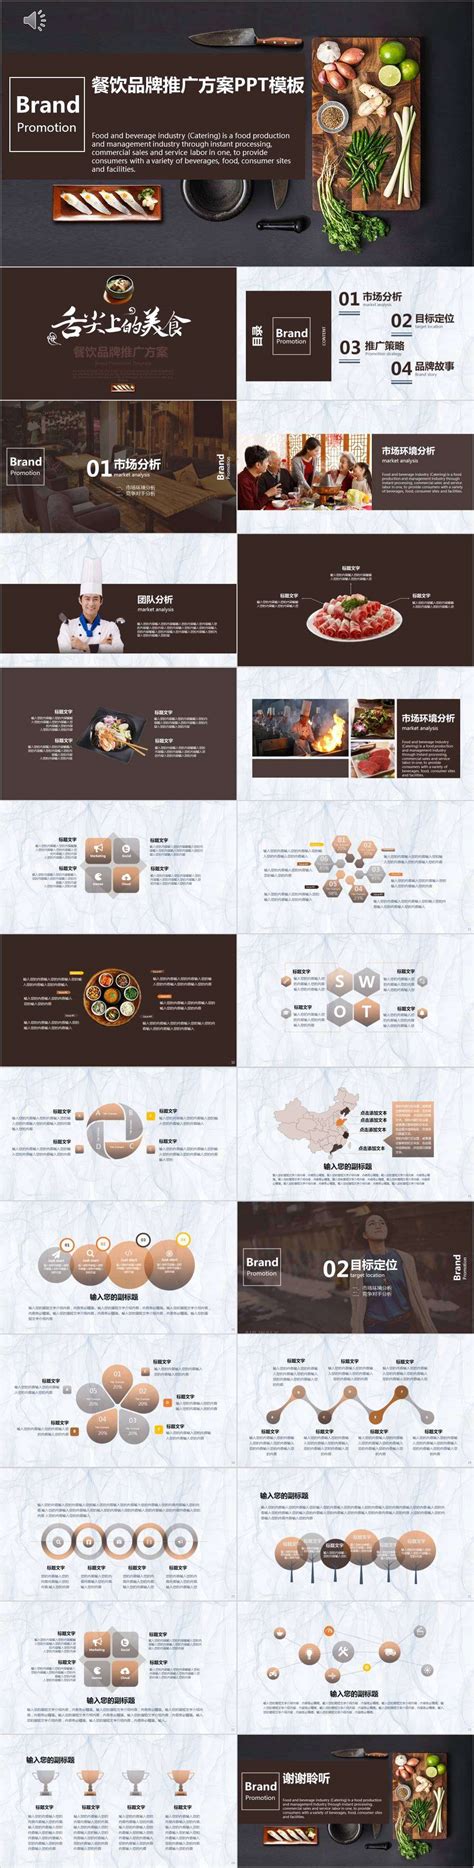 餐饮品牌推广方案商业计划书PPT模板餐饮产品介绍ppt-PPT模板-图创网